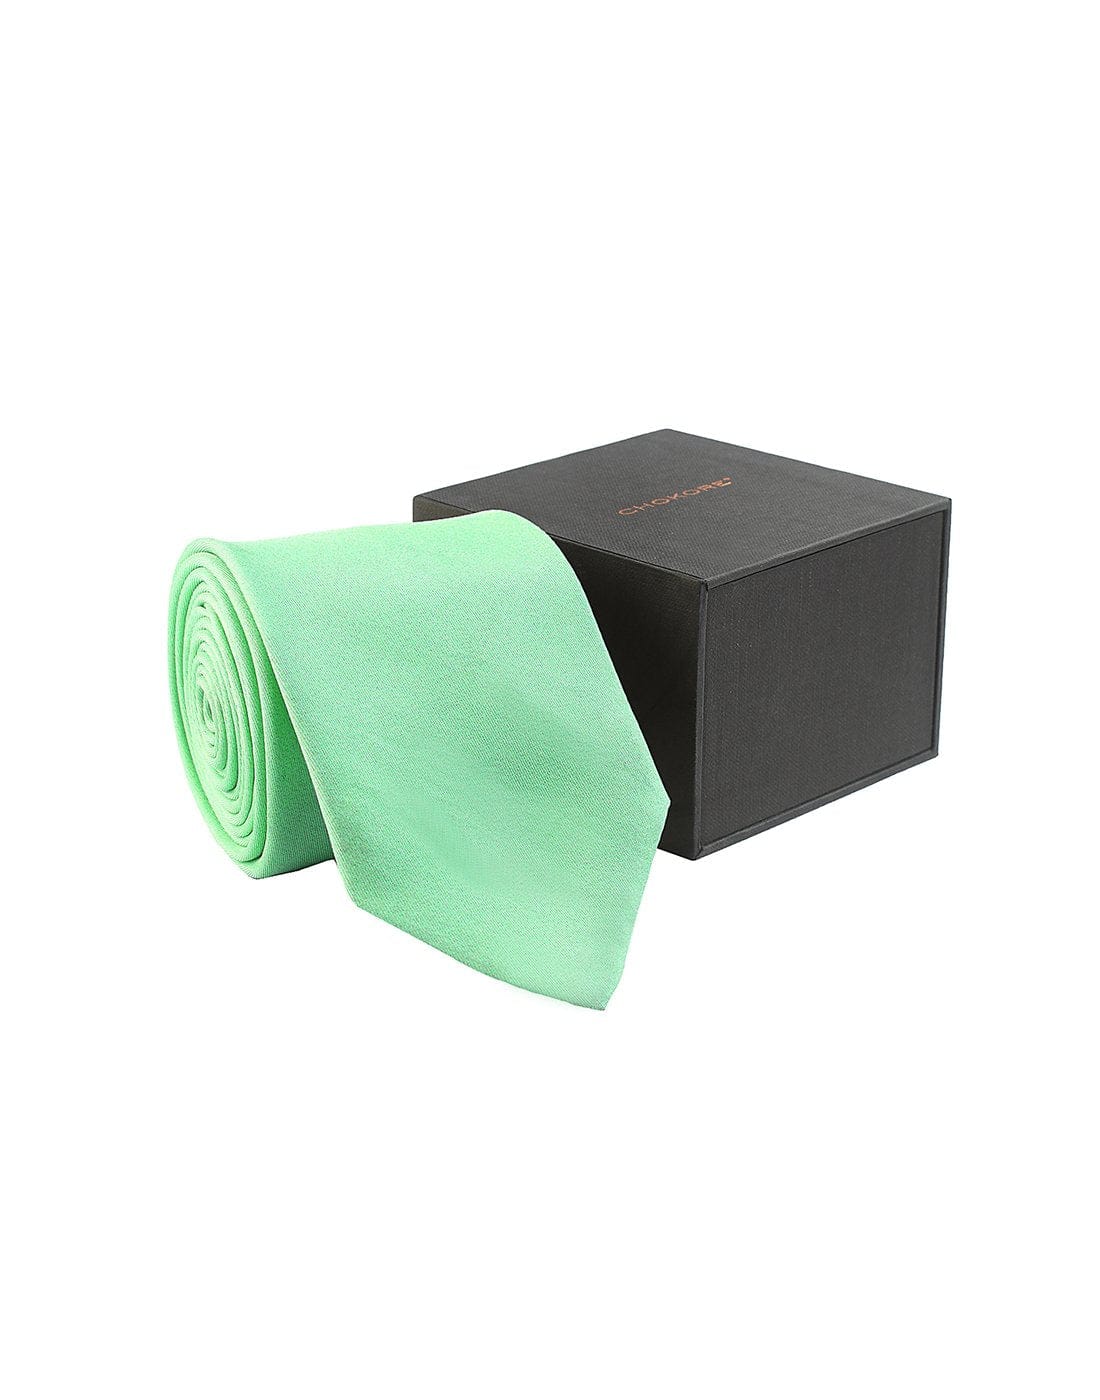 Chokore Sea Green Twill Silk Tie - Solids line